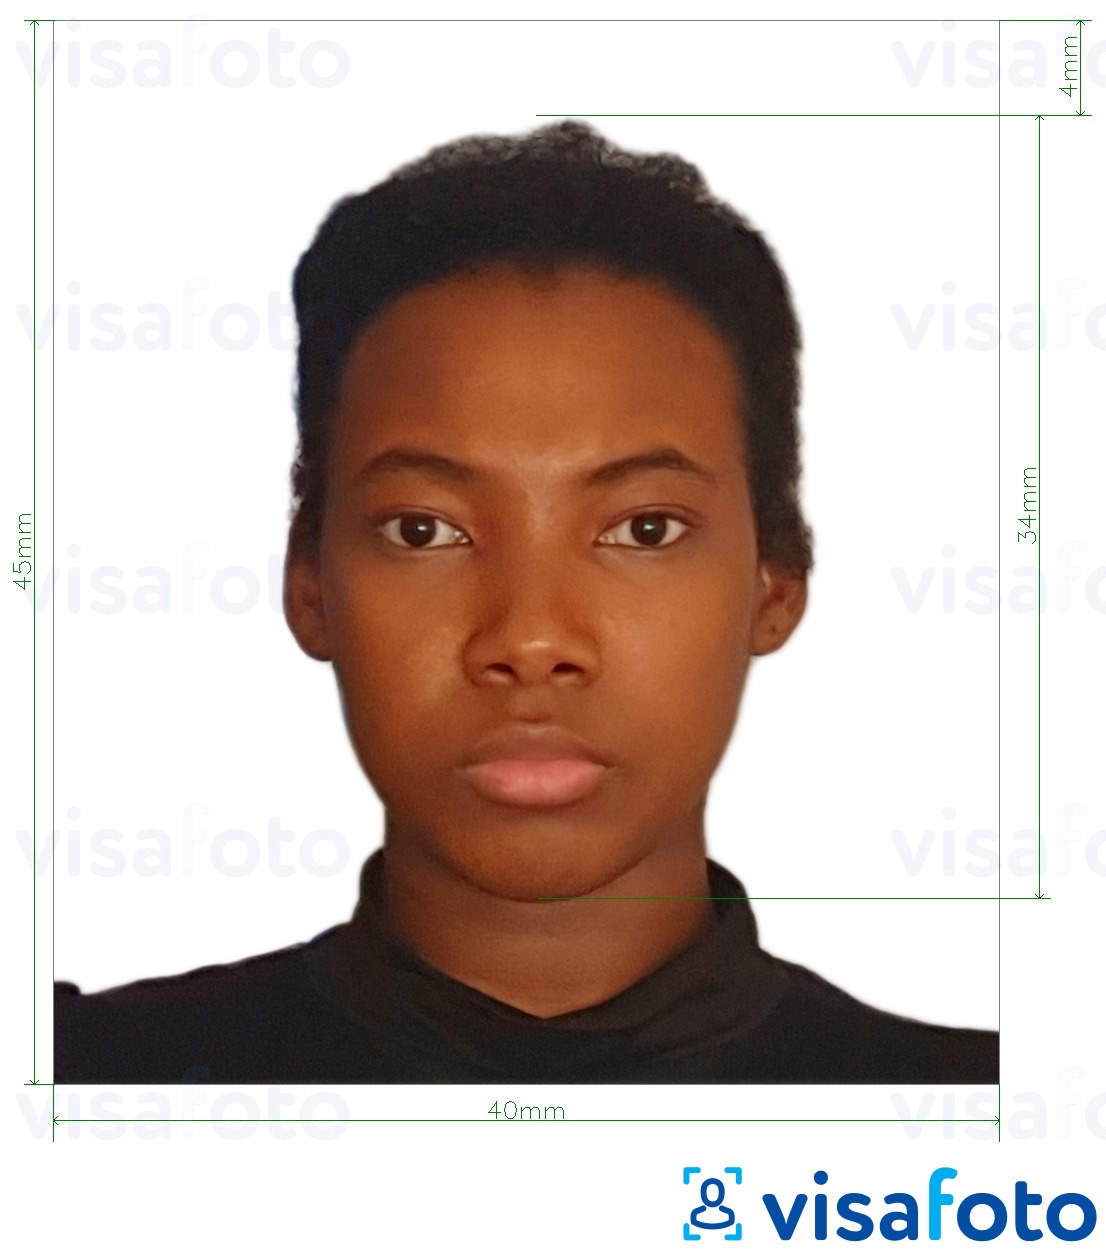 Образец фотографии для Виза в Танзанию 40x45 мм (4x4,5 см) с точными размерами